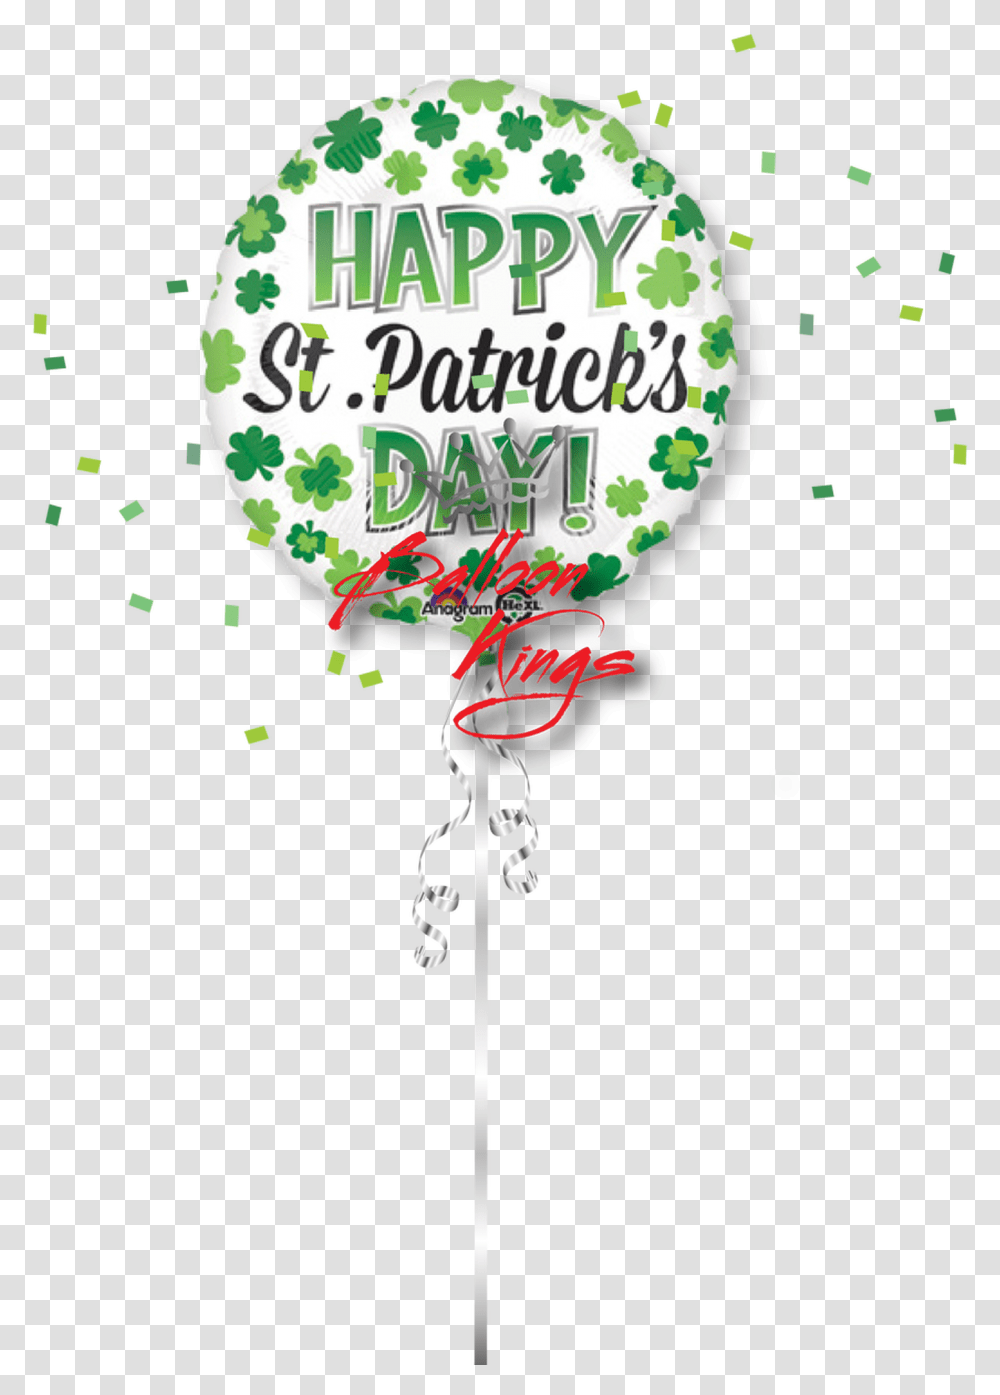 Happy St Patricks Day Shamrocks Fte De La Musique, Paper, Poster, Advertisement Transparent Png